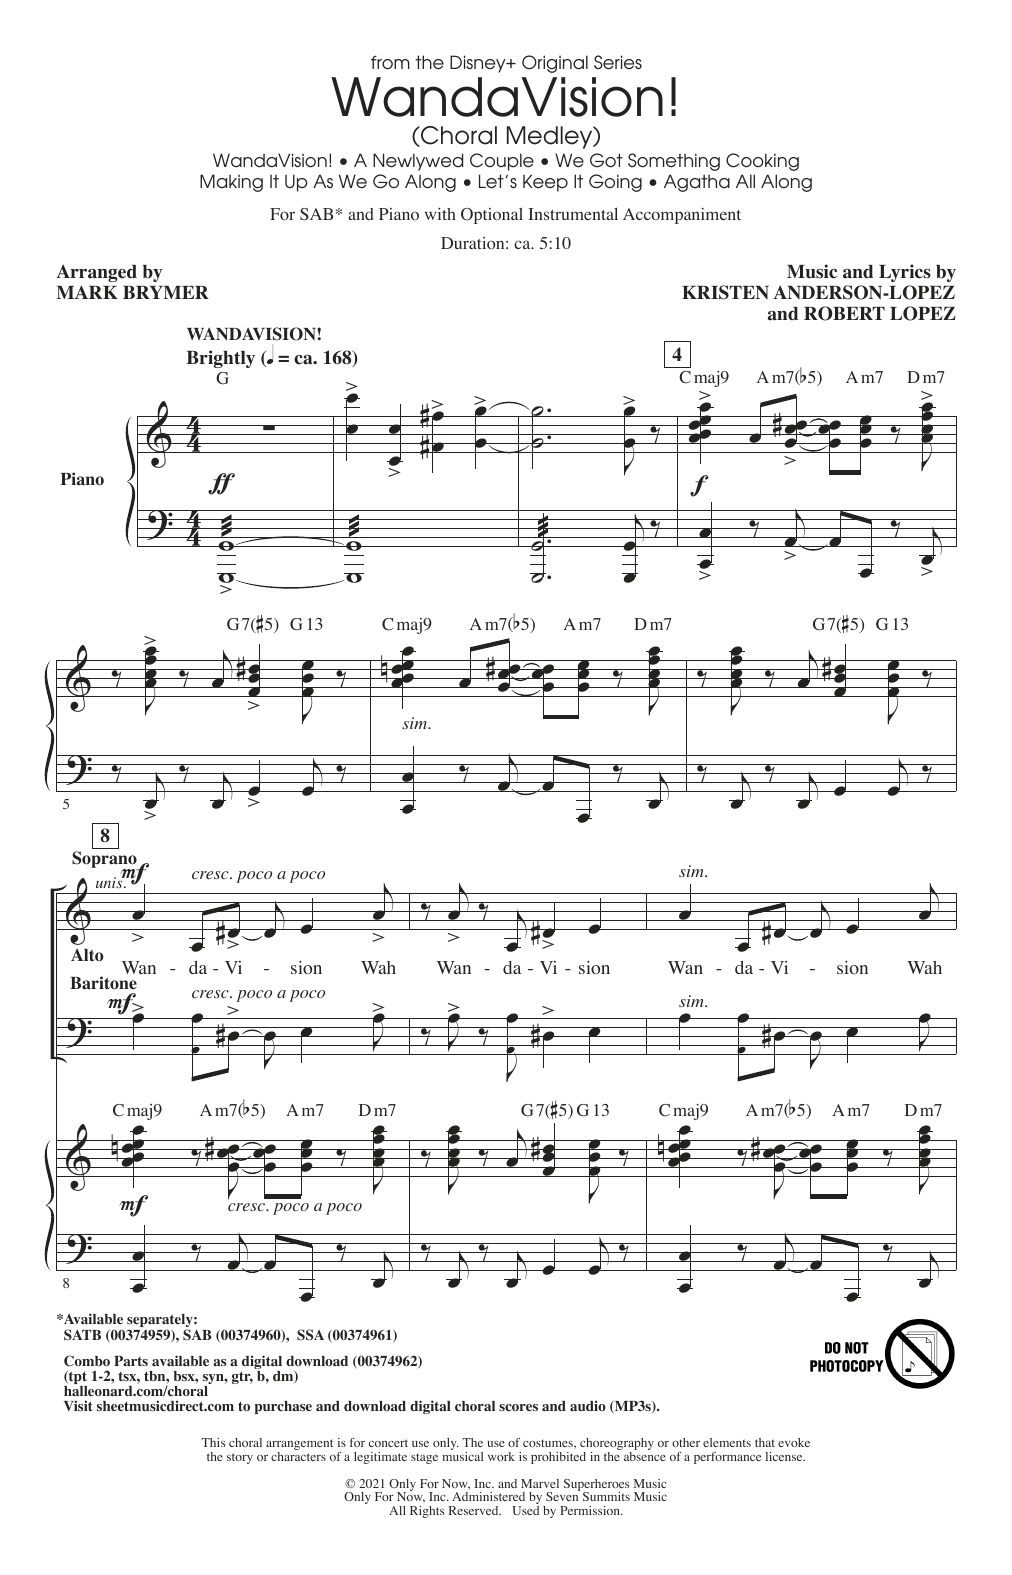 WandaVision! (Choral Medley) (arr. Mark Brymer) (SAB Choir) von Kristen Anderson-Lopez & Robert Lopez